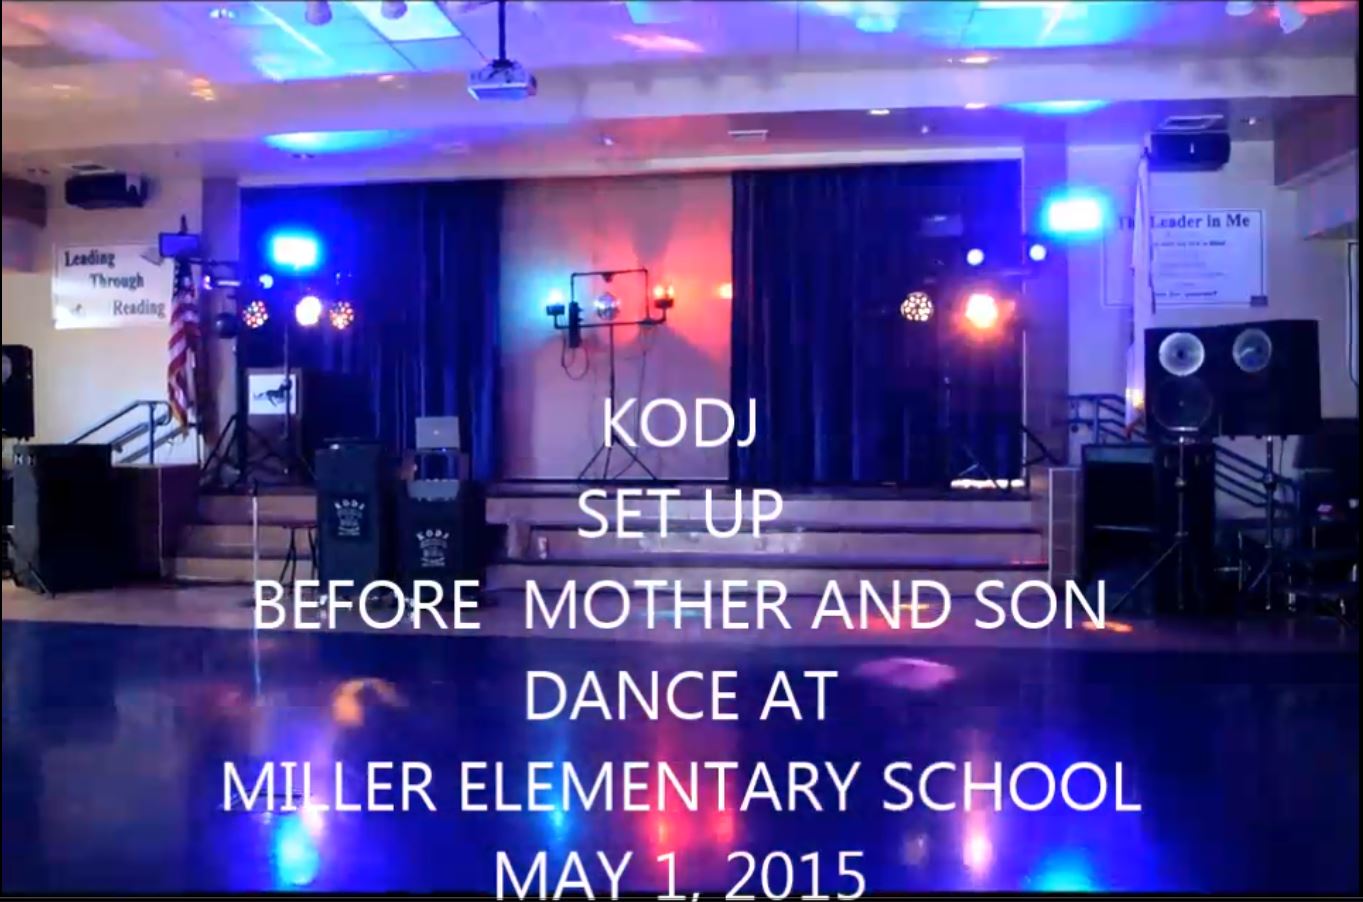 The KODJ Setup with lights - May 1st 2015